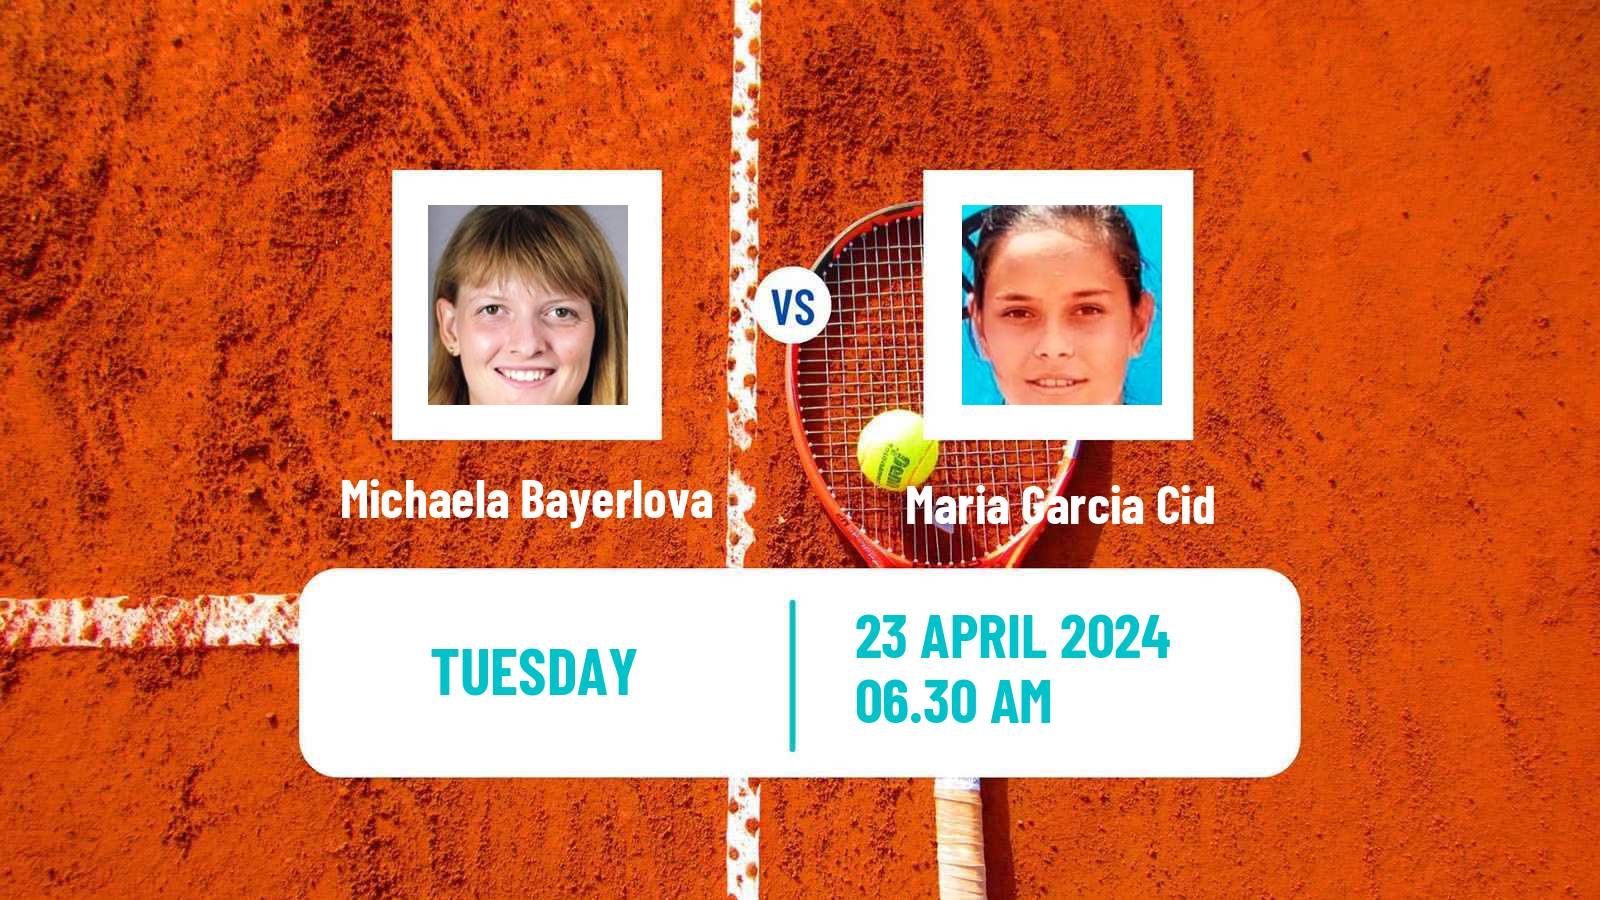 Tennis ITF W15 Telde 4 Women Michaela Bayerlova - Maria Garcia Cid